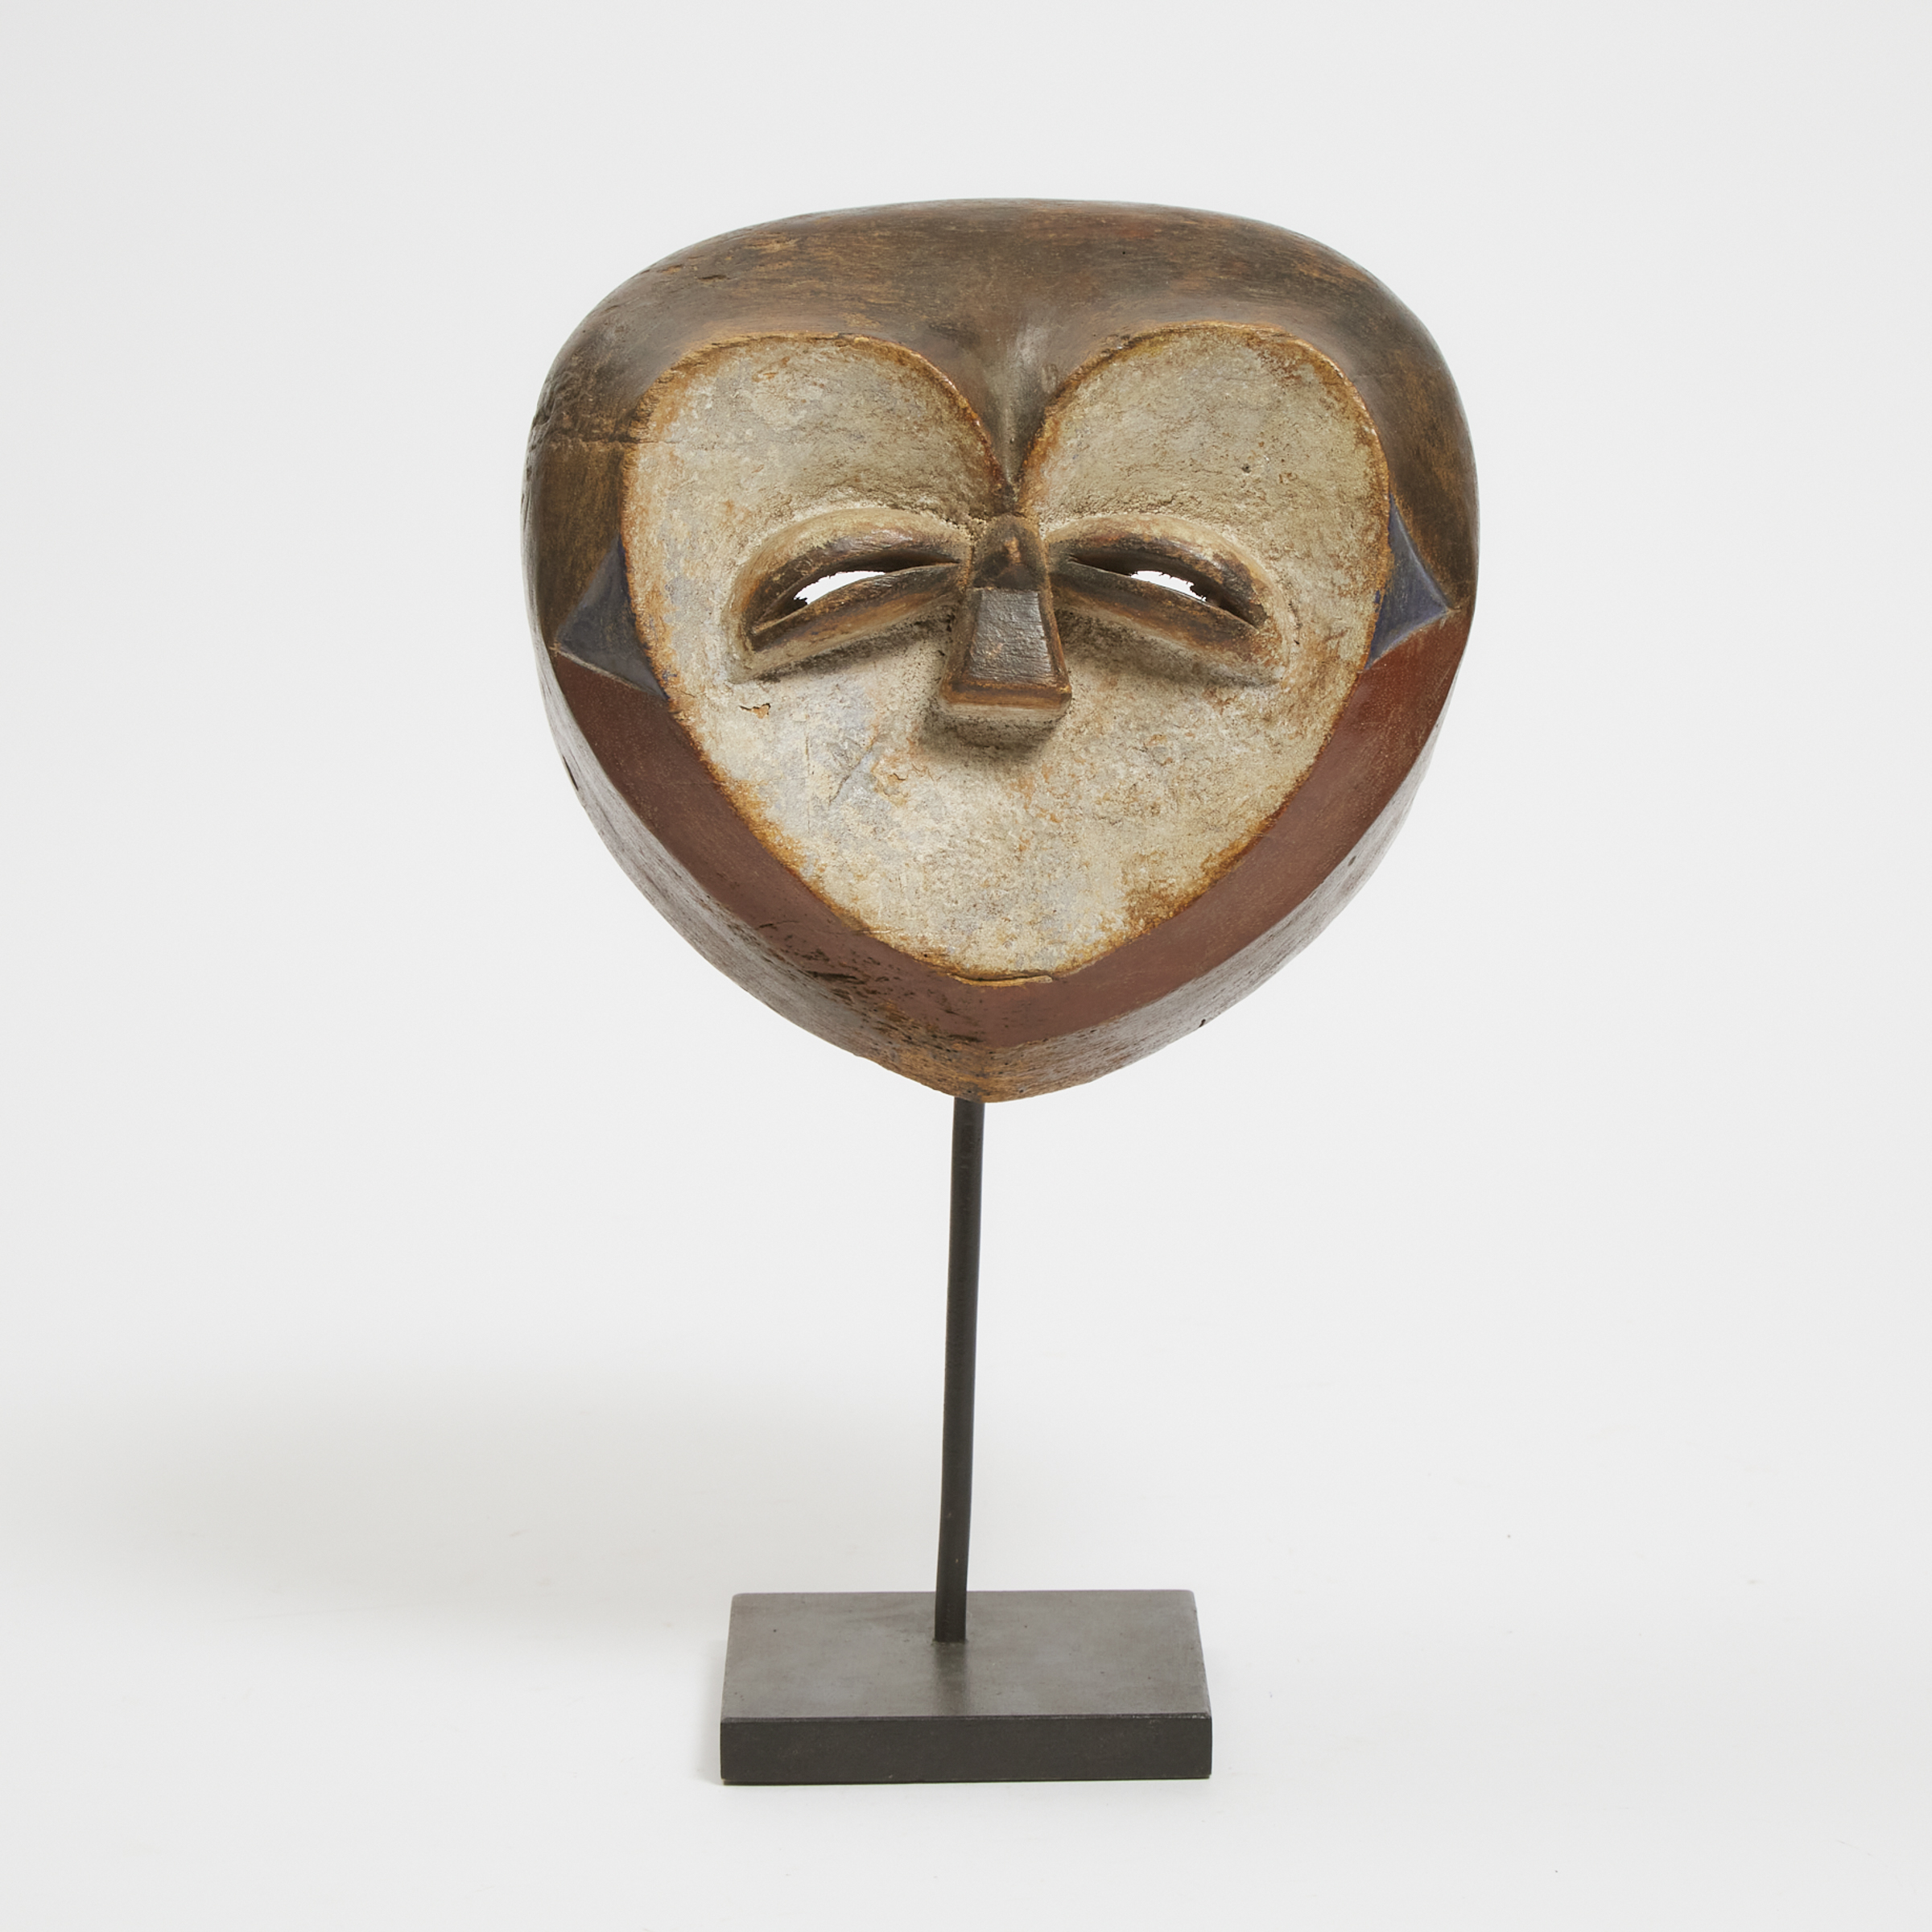 Kwele Mask, Gabon, West Africa, 20th century